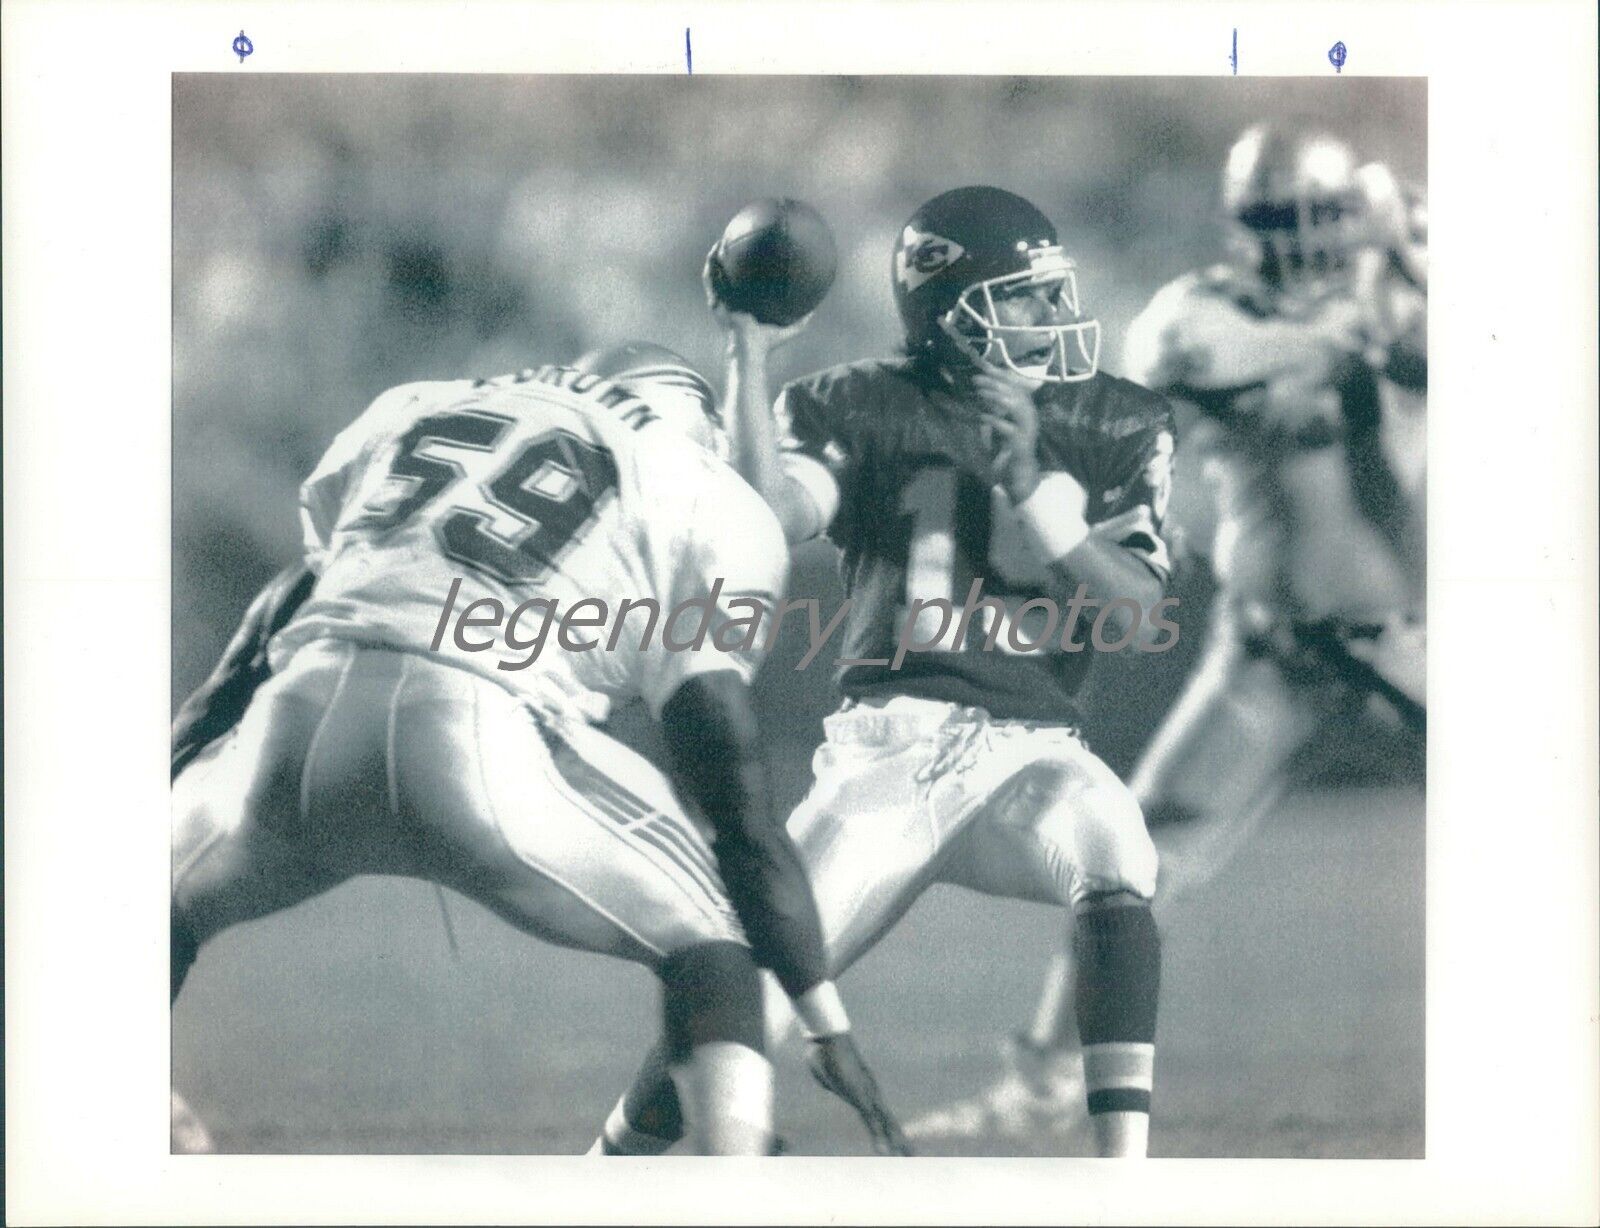 1993 Kansas City Chiefs QB Joe Montana Passes Original News Service Photo